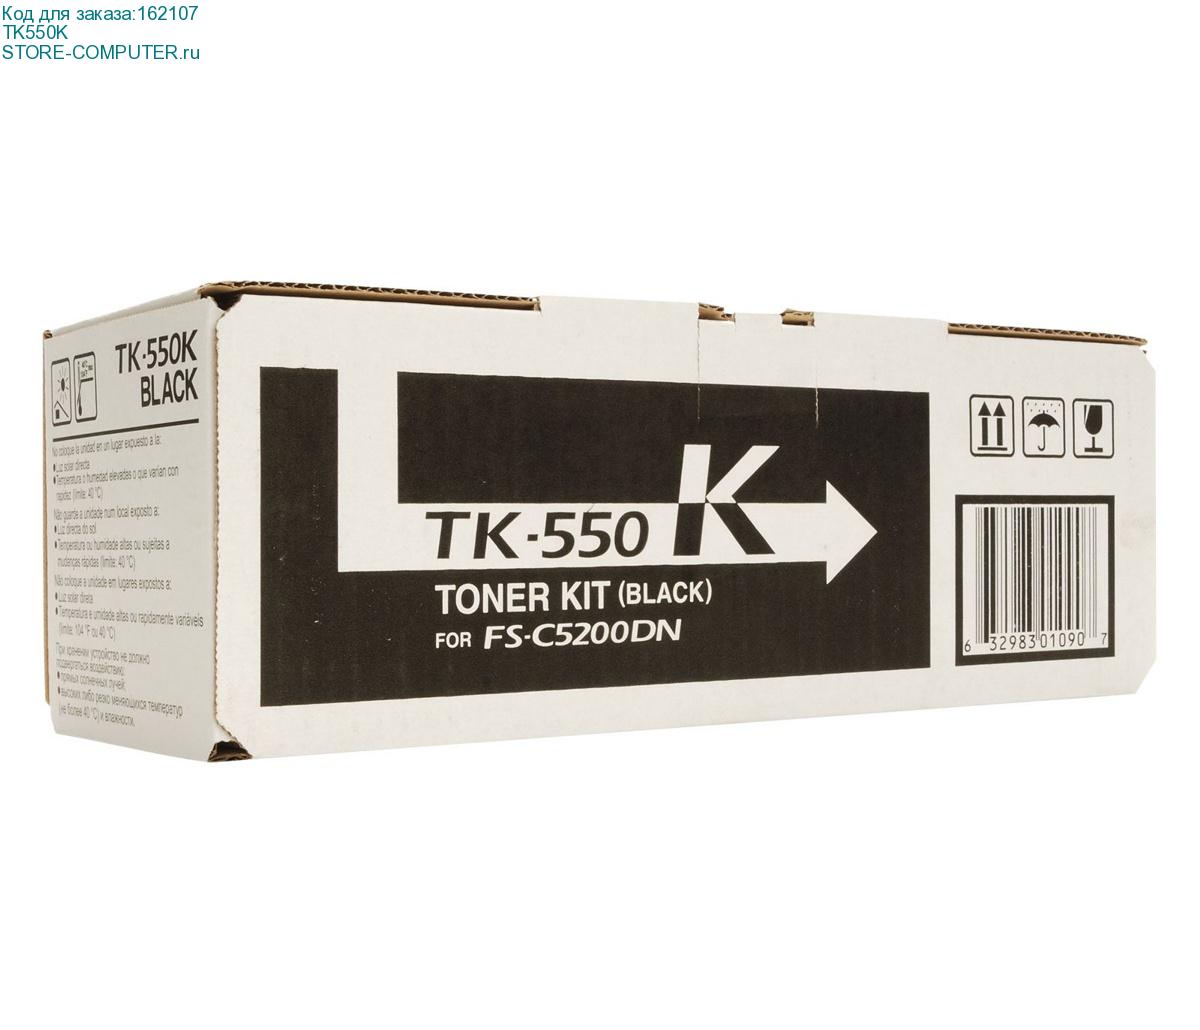 TK550K